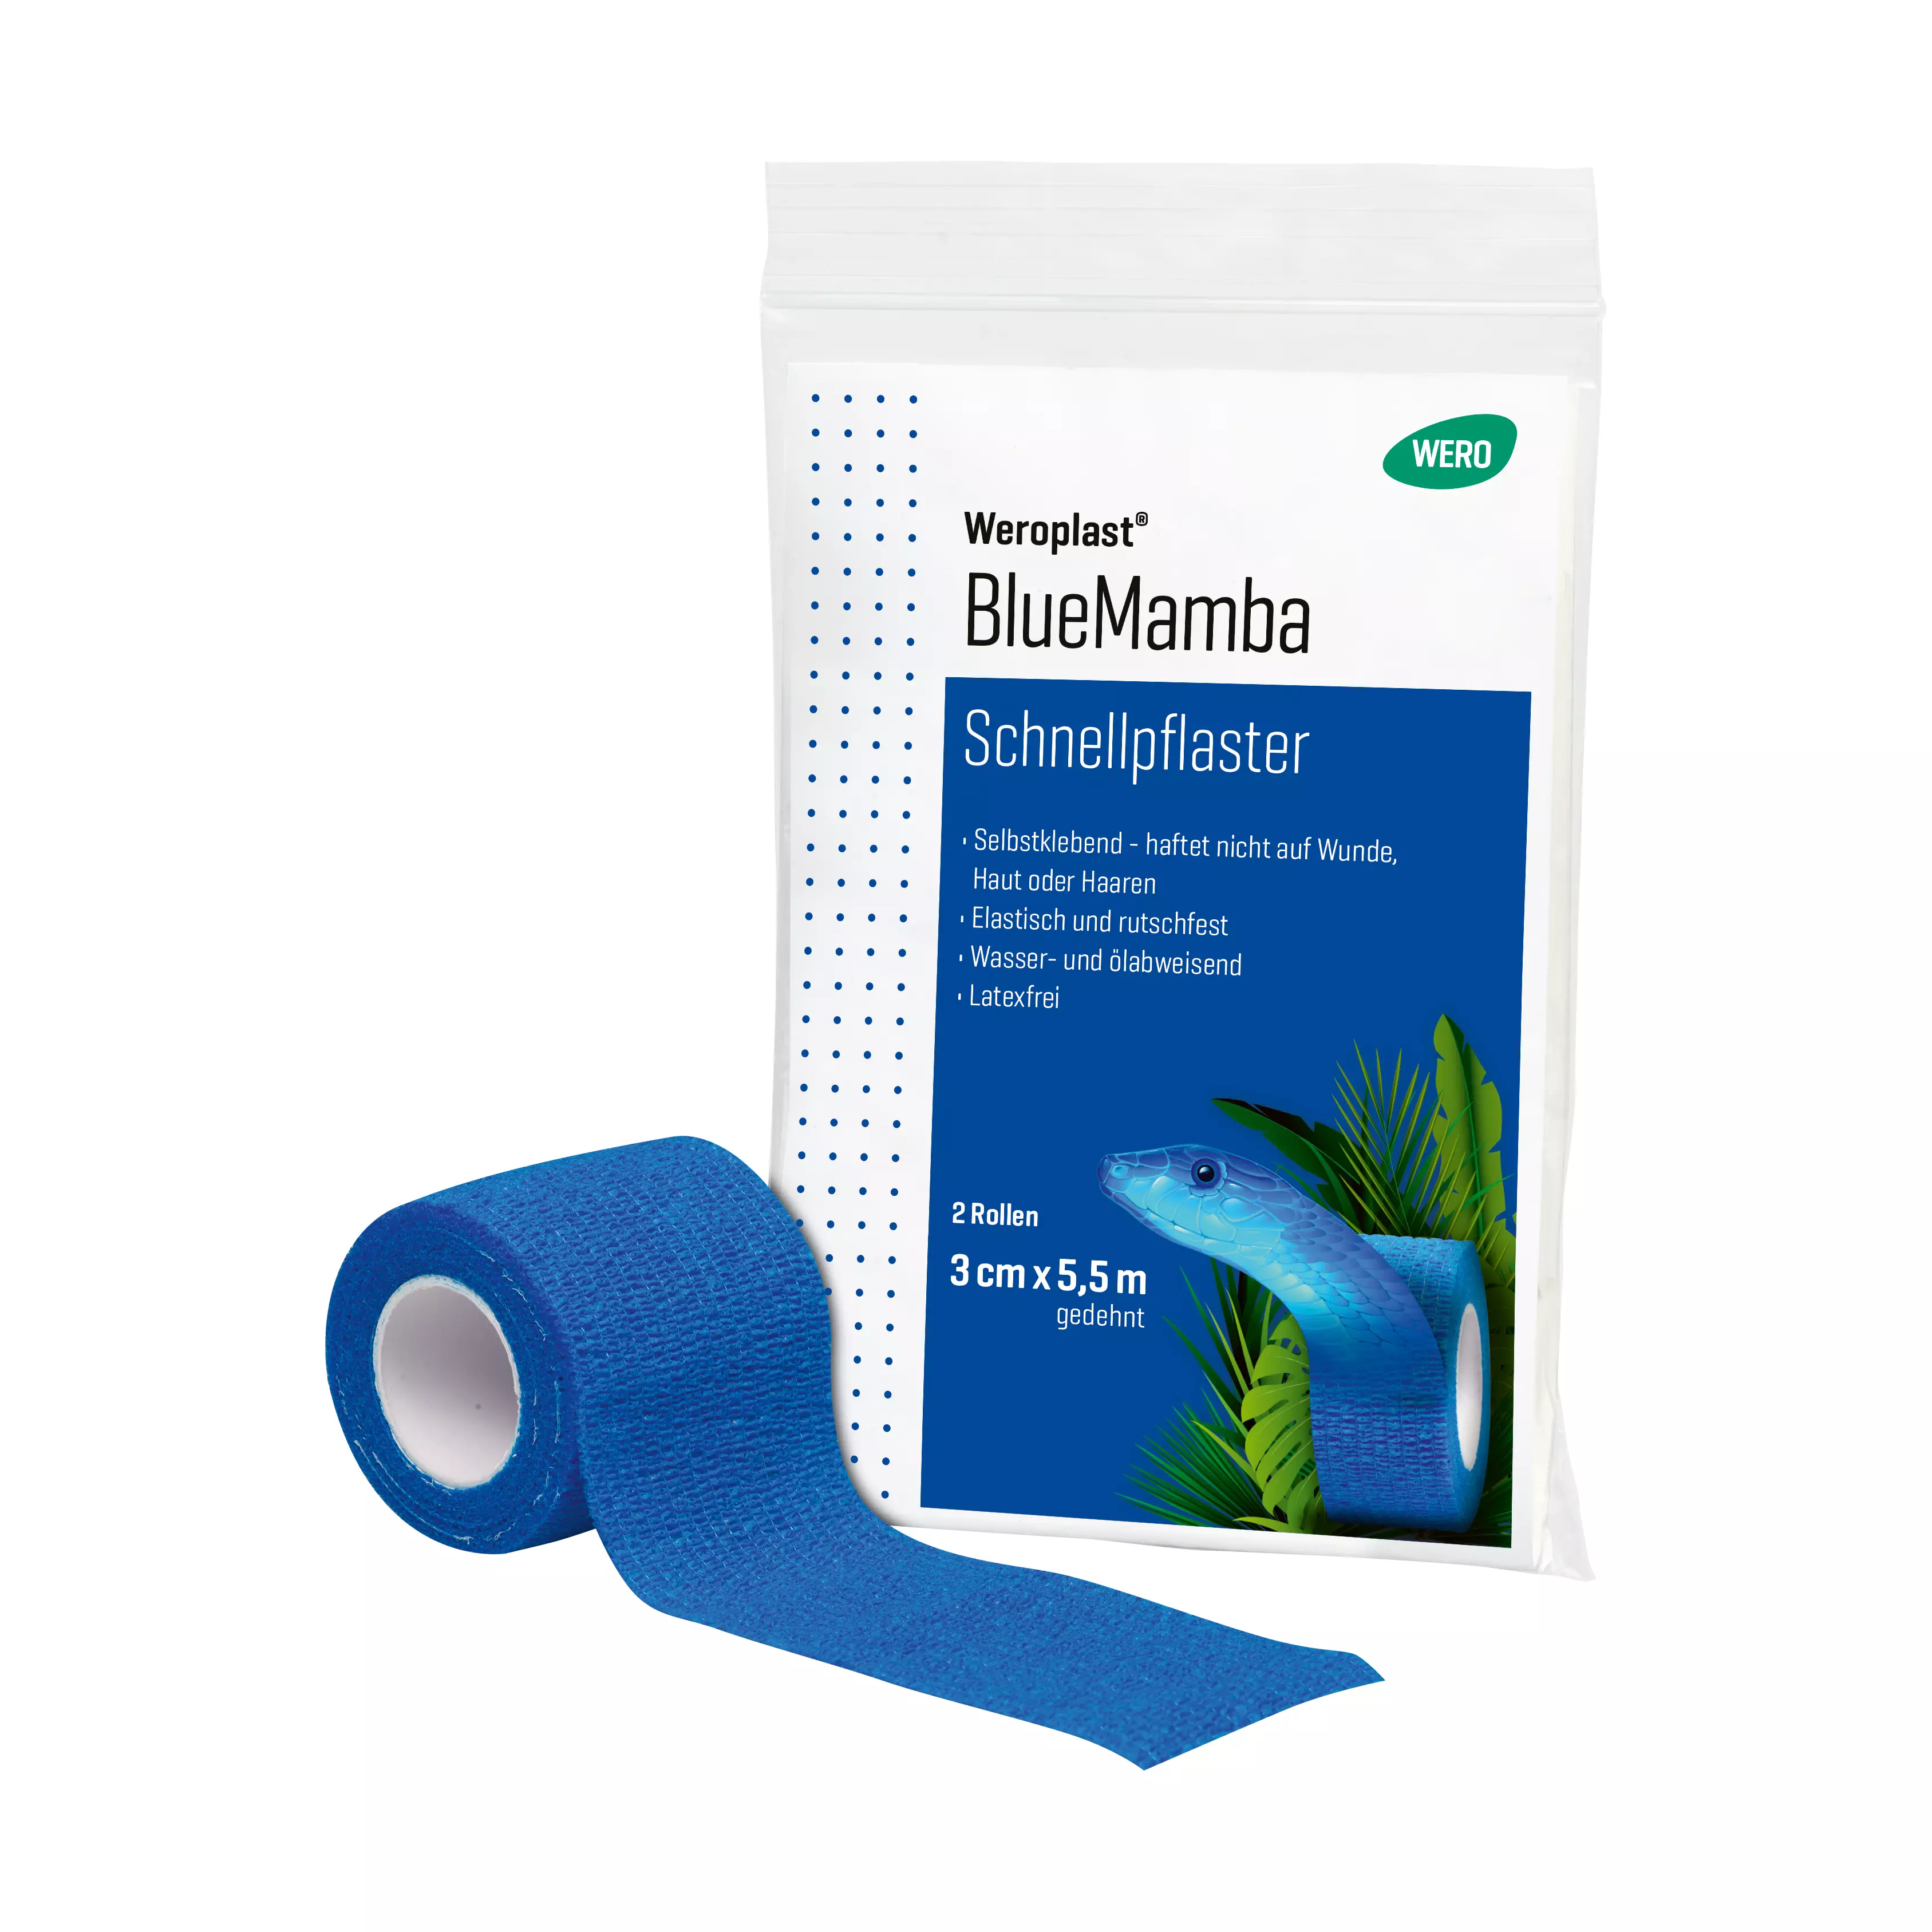 Schnellpflaster Weroplast® BlueMamba - 12 Stk